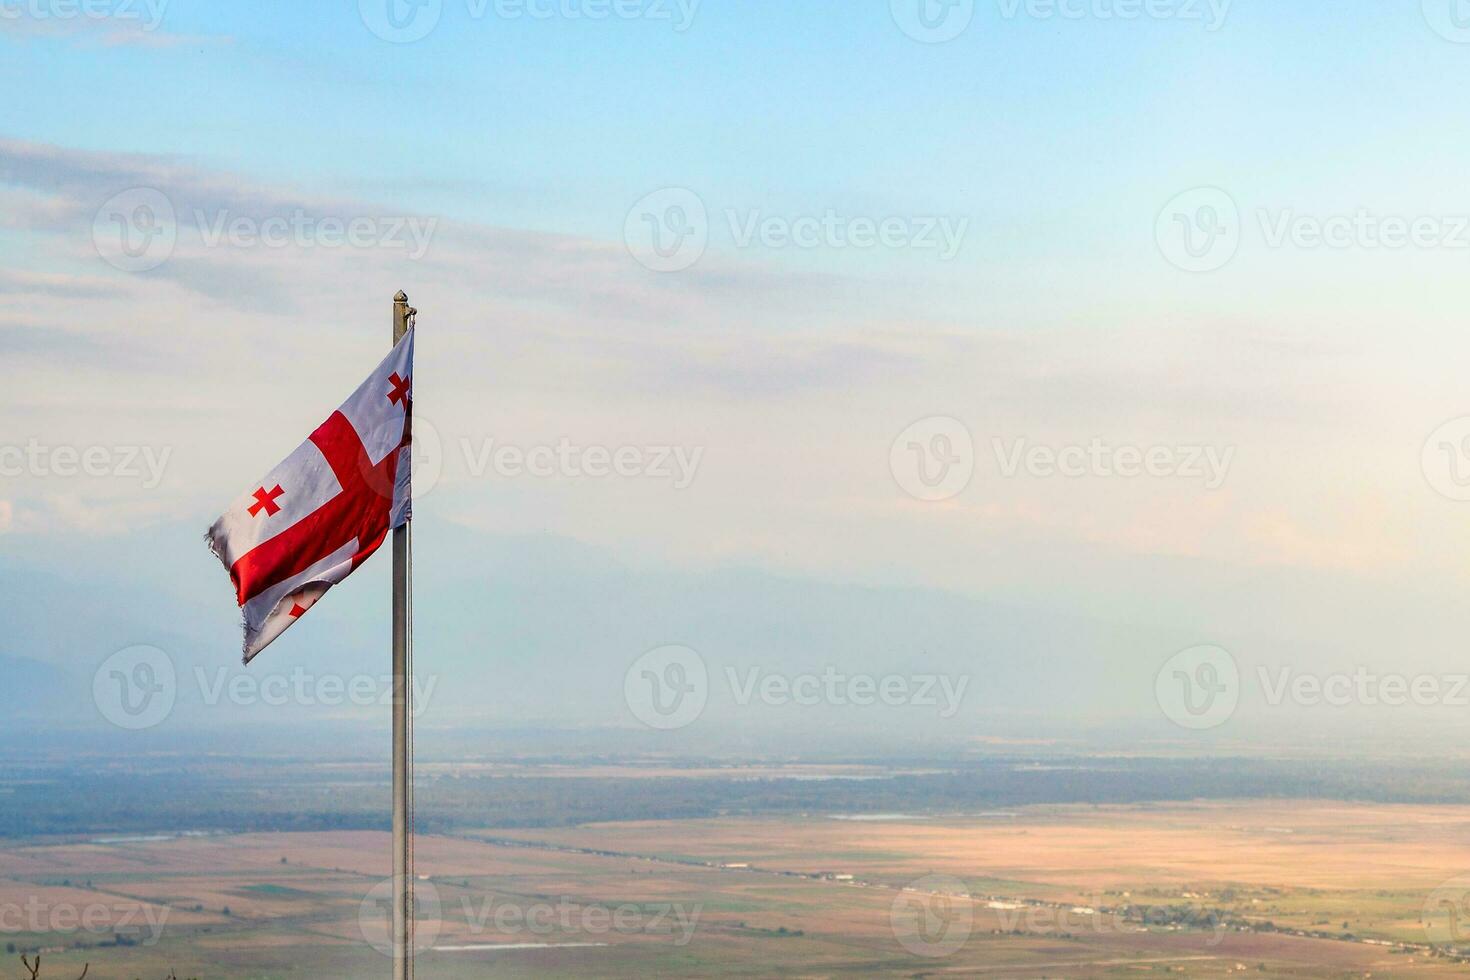 géorgien drapeau plus de alazan vallée dans crépuscule photo